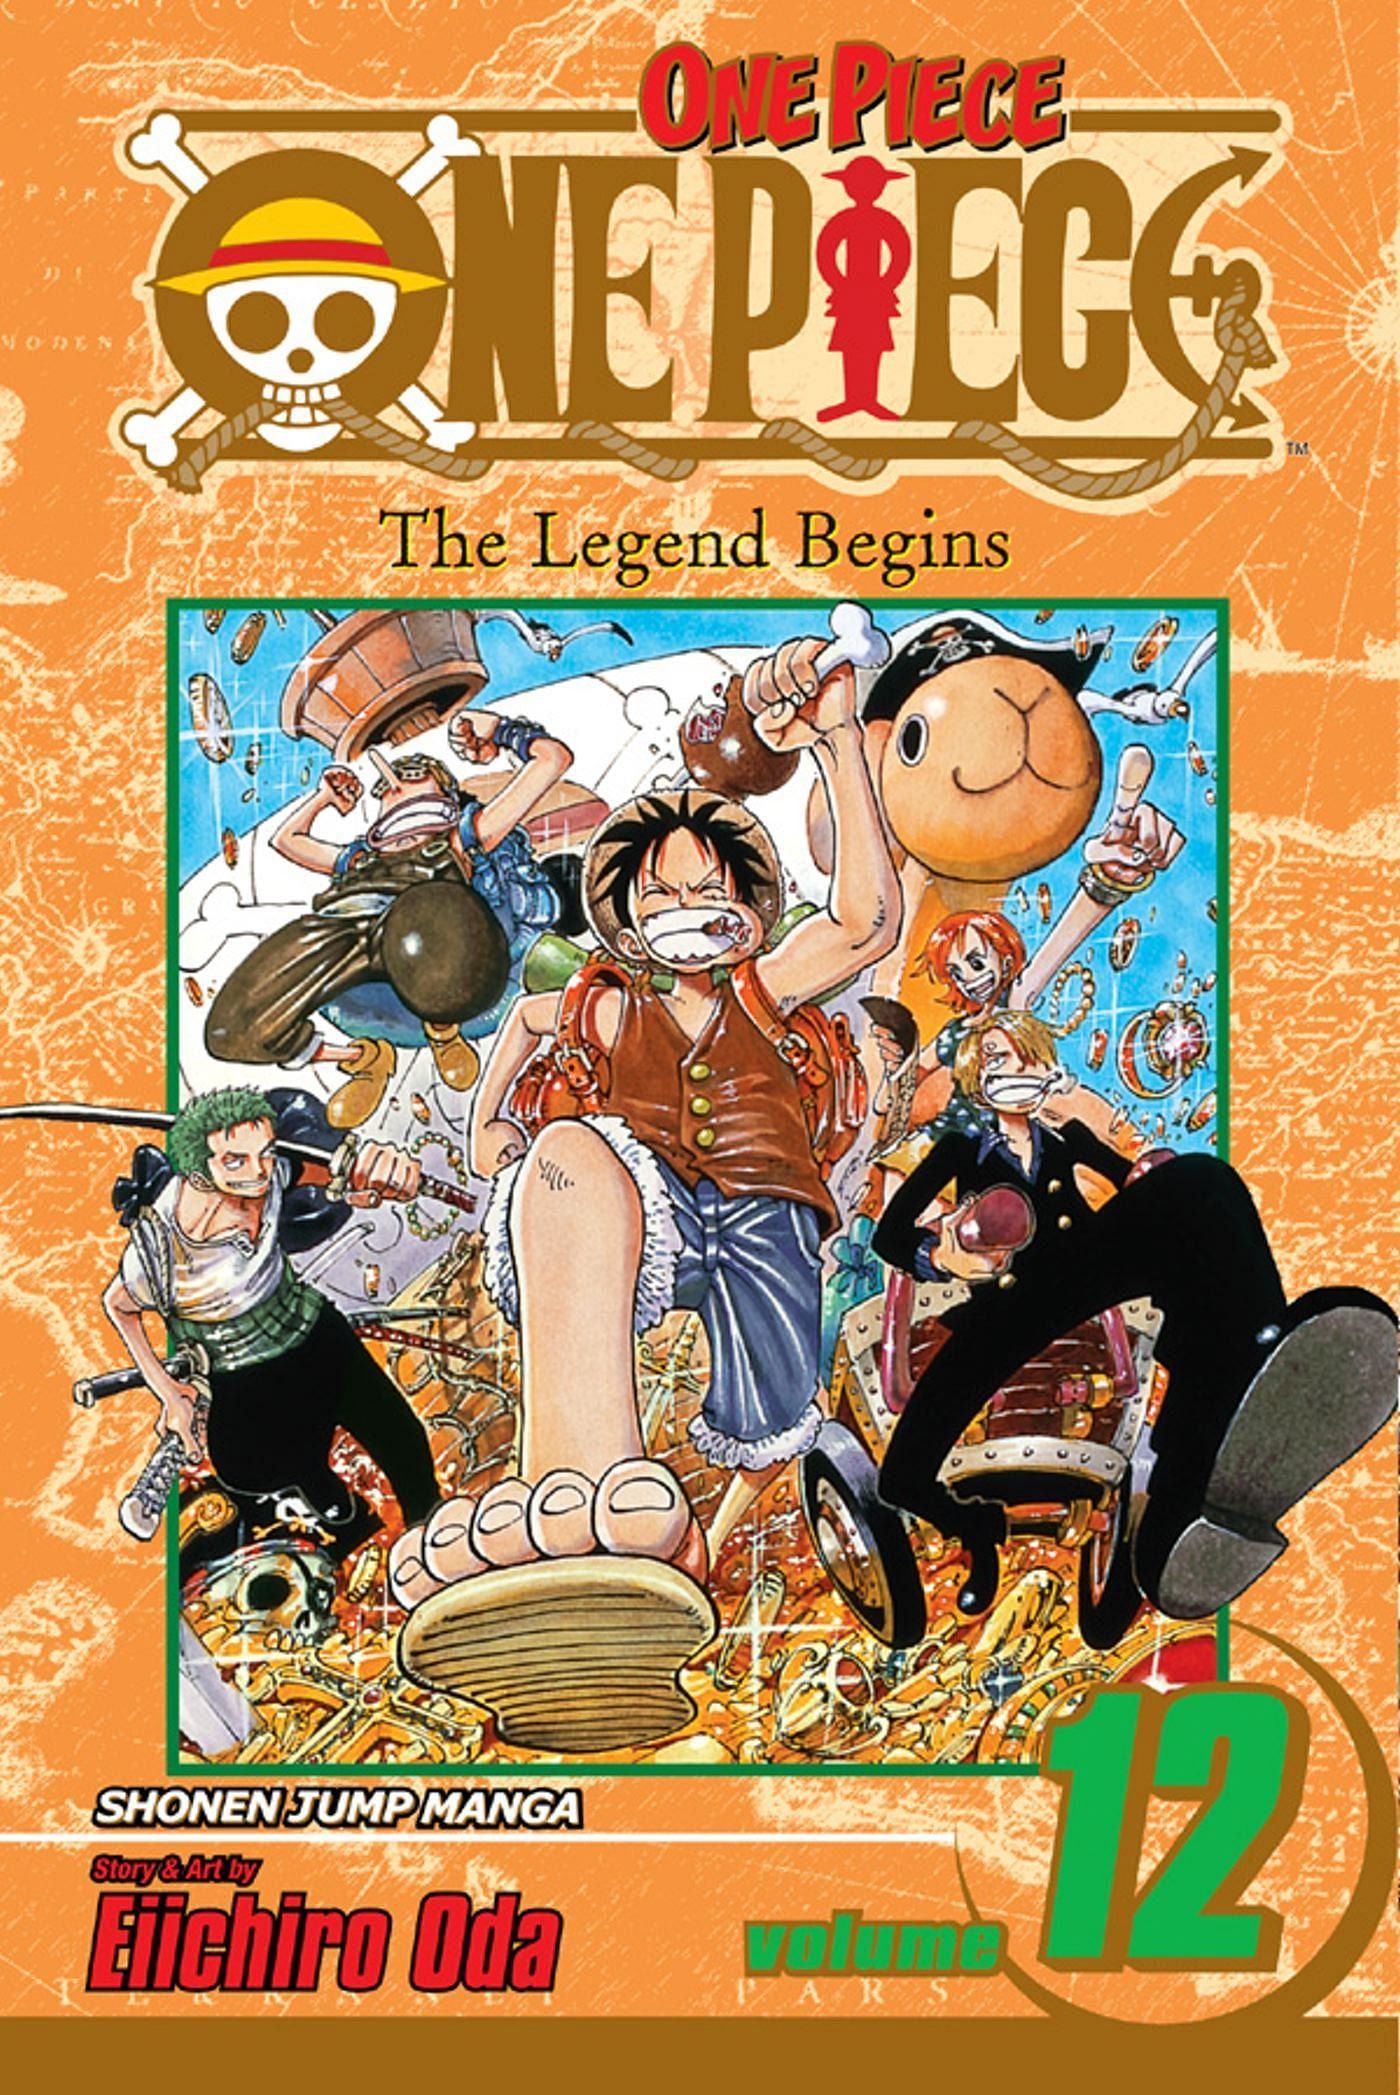 The cover art for One Piece Volume 12 (Image via Shueisha)